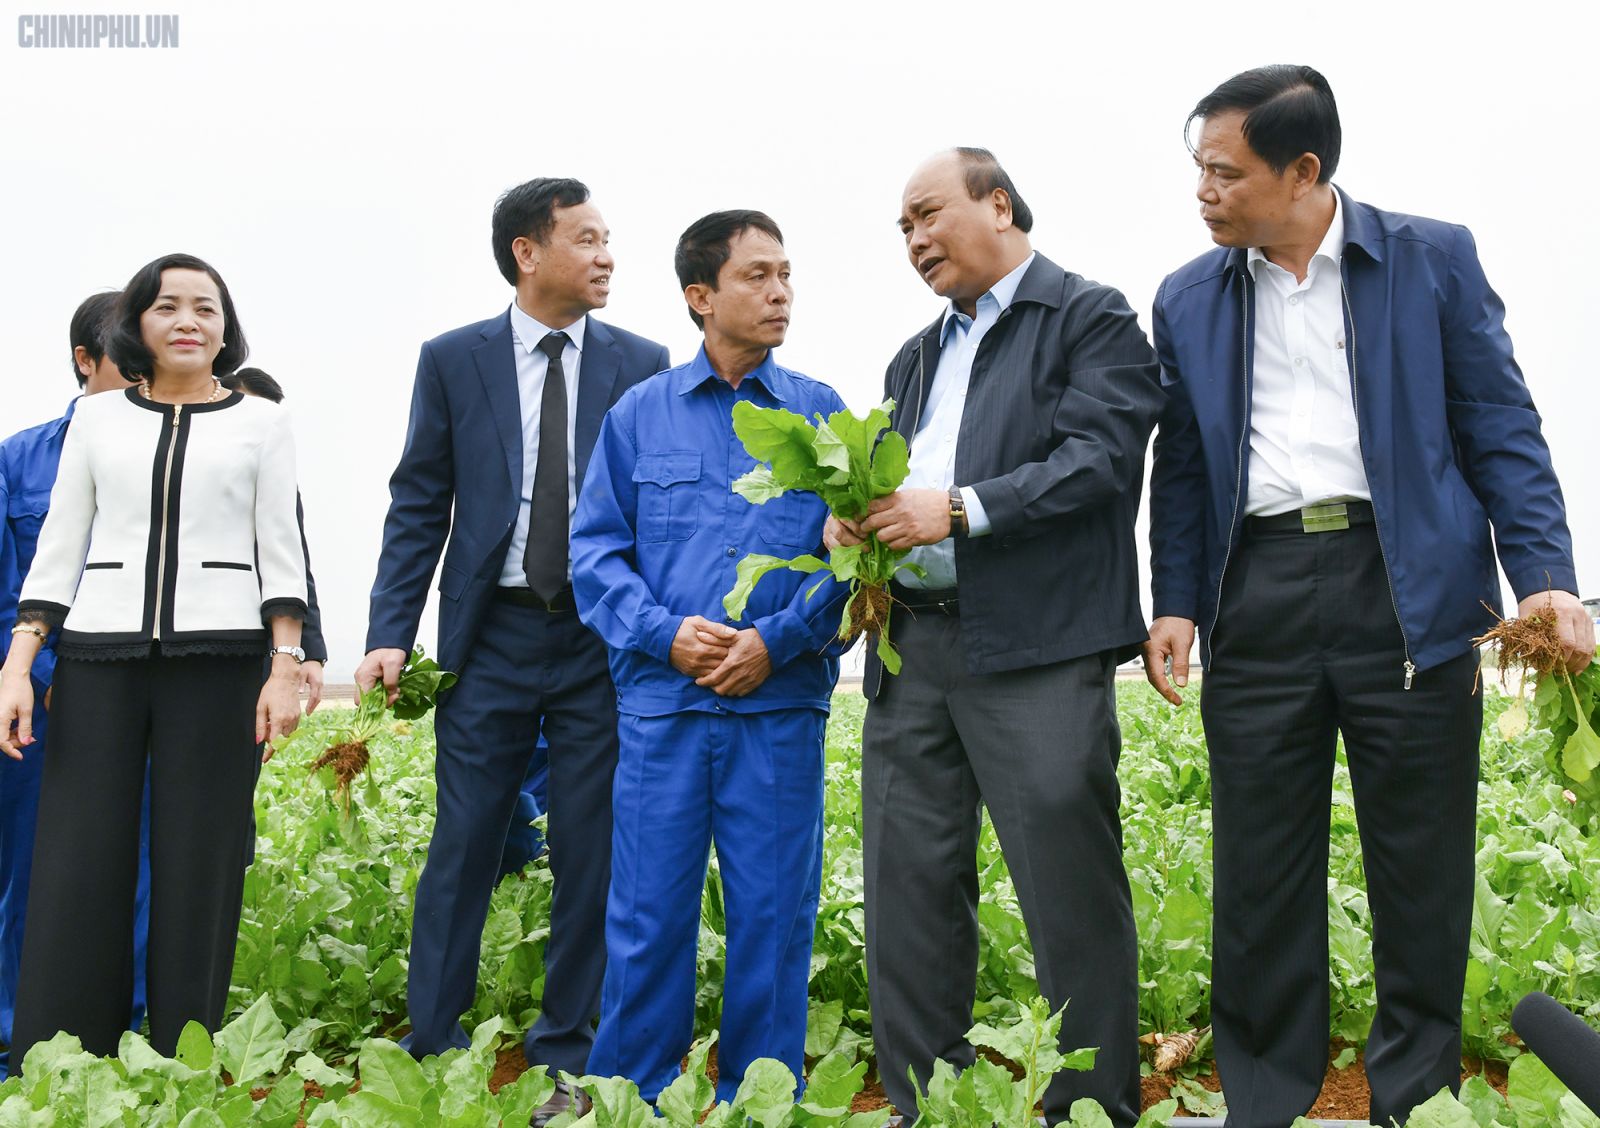 Thủ tướng thăm hỏi, động viên người lao động trên nông trường của Công ty Doveco - Ảnh: VGP/Quang Hiếu